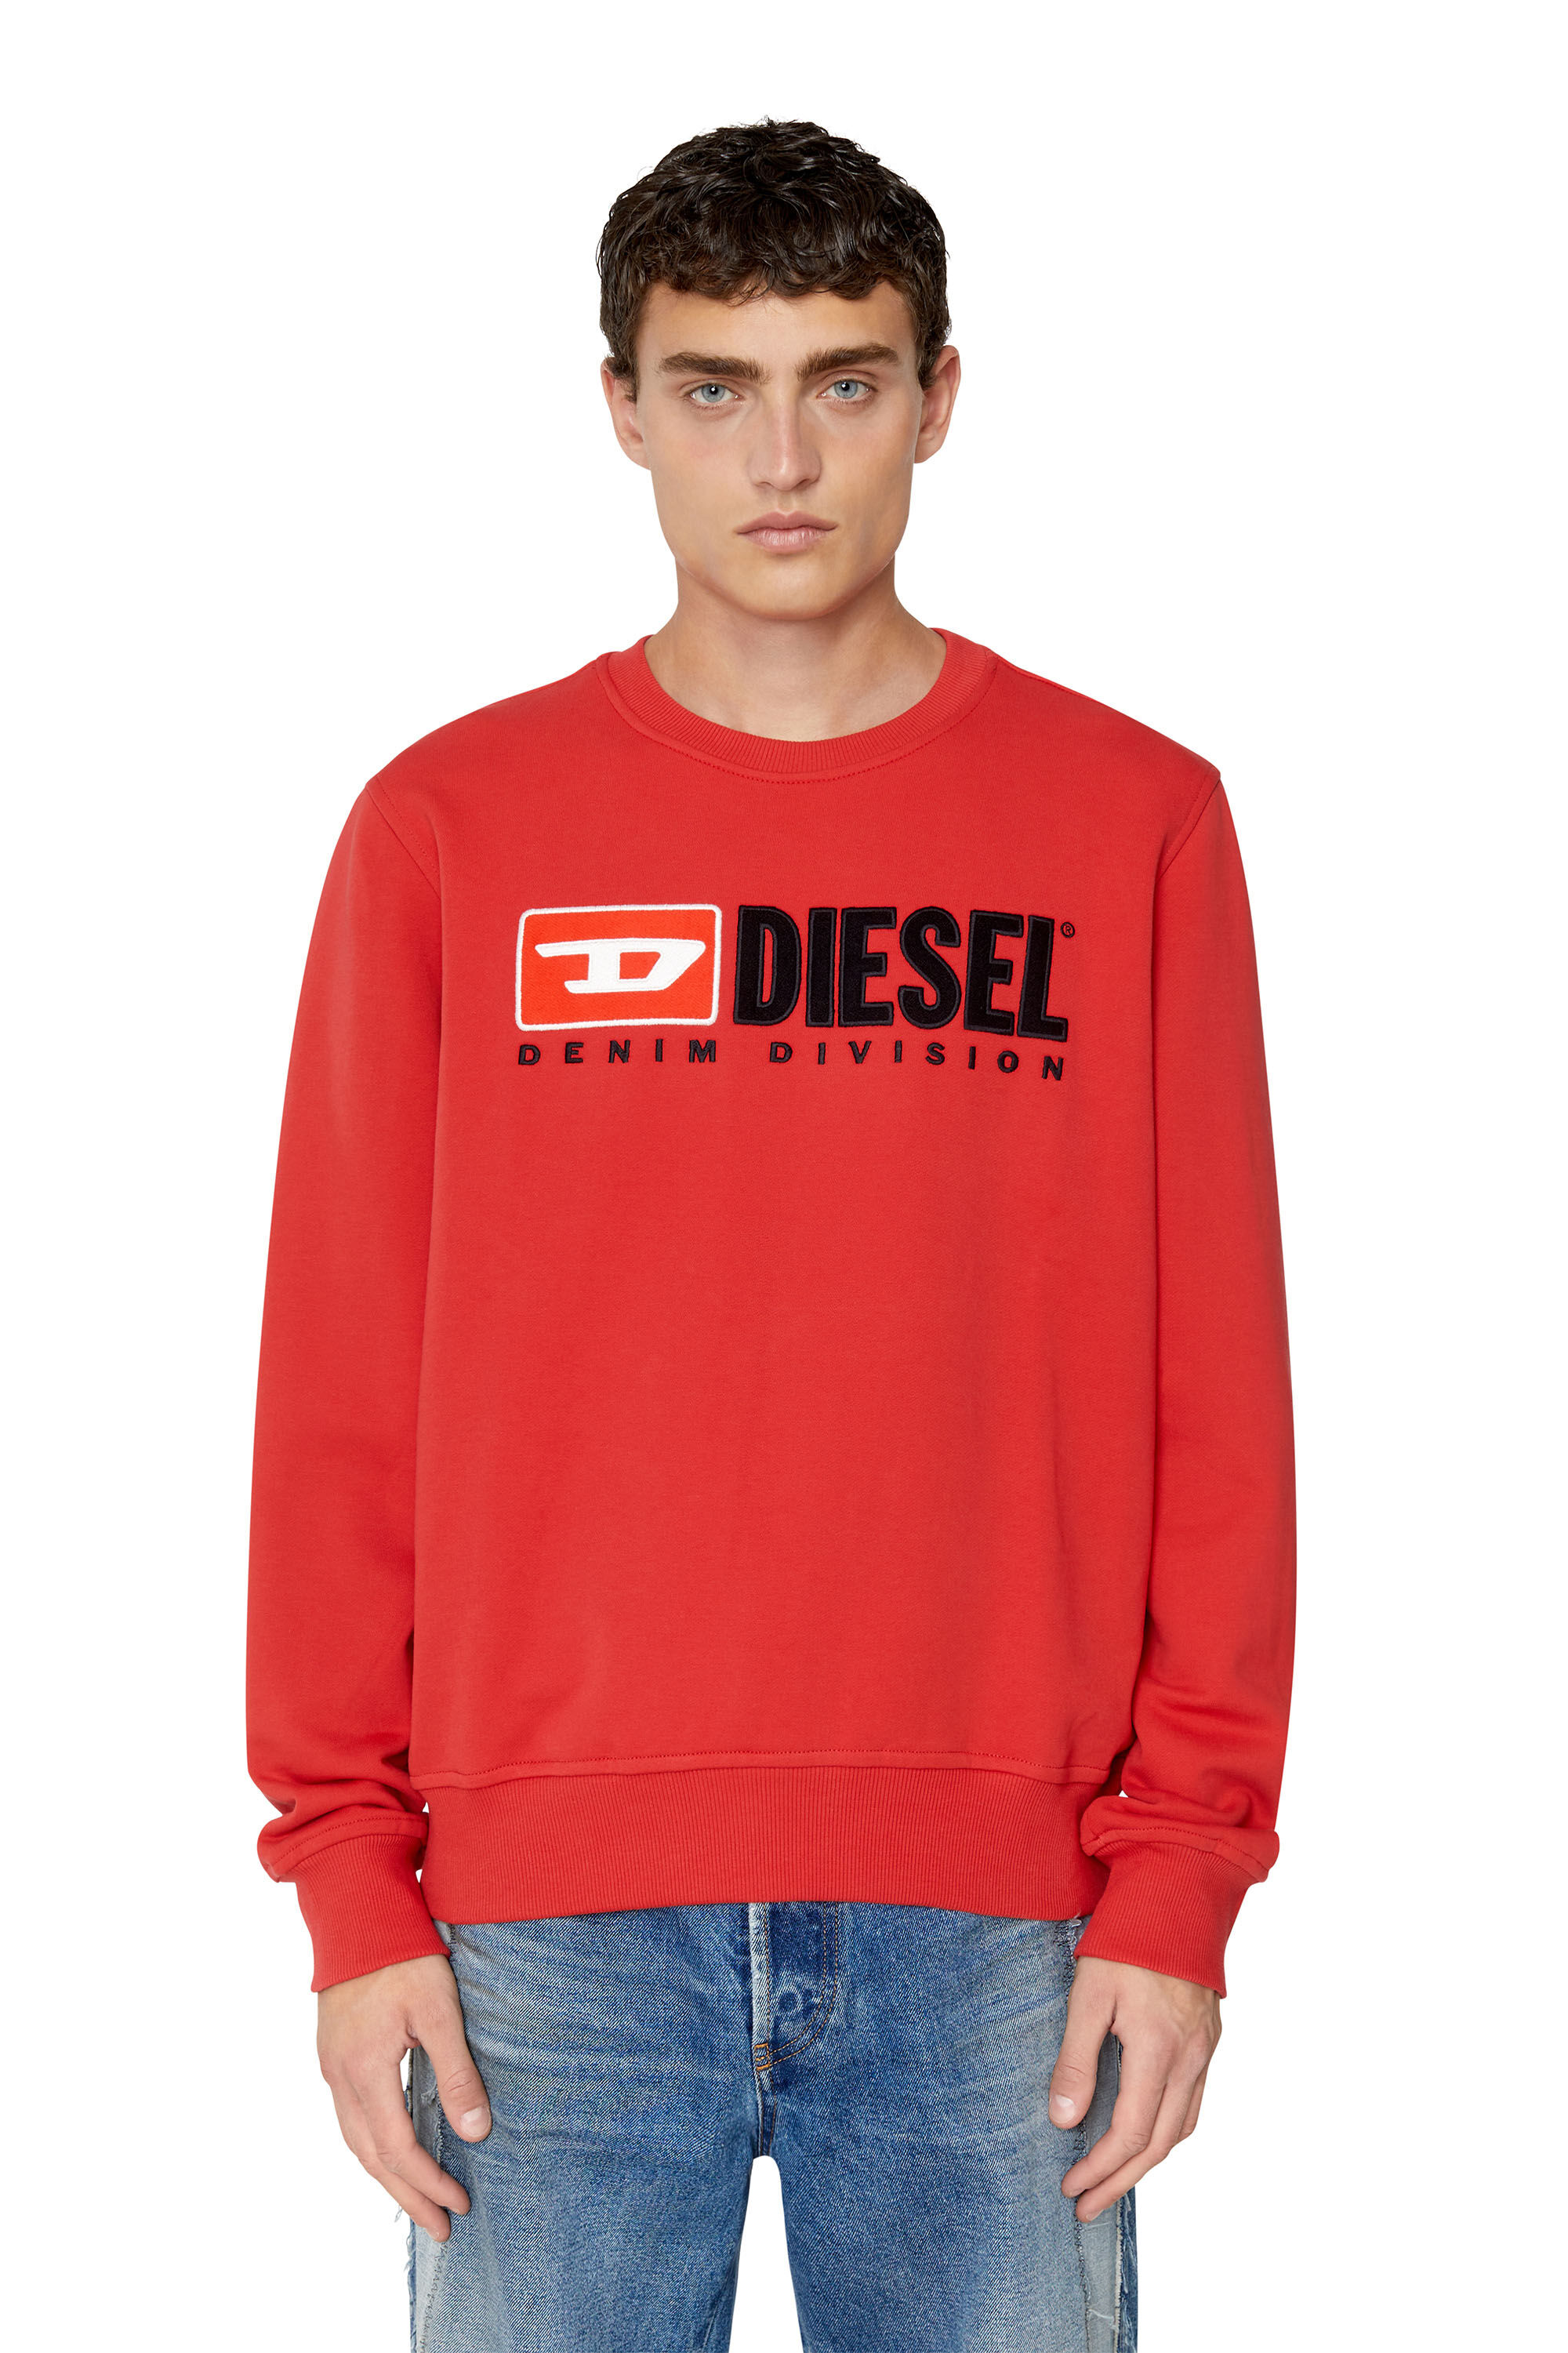 Diesel - S-GINN-DIV, Rot - Image 3